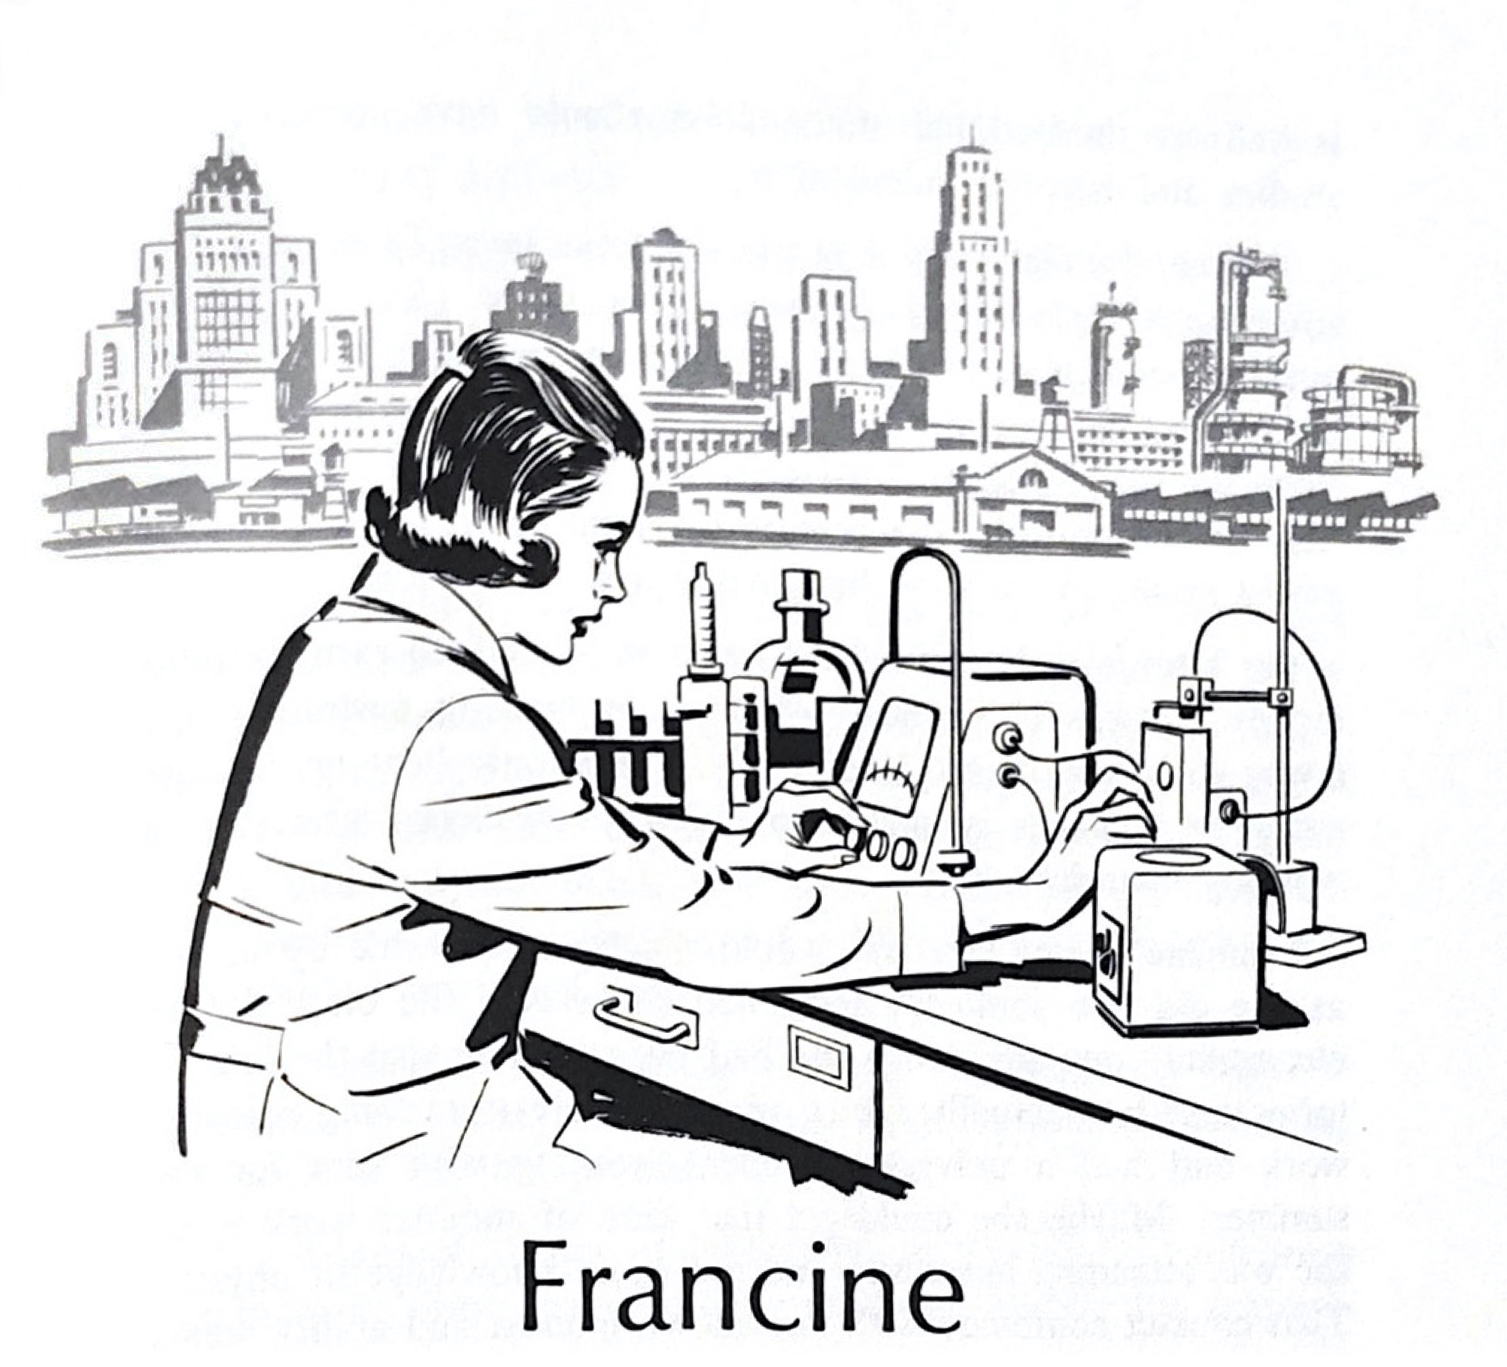 Dessin stylisé d’une jeune femme en sarrau de laboratoire faisant fonctionner des appareils scientifiques. L’étiquette en dessous se lit « Francine ».